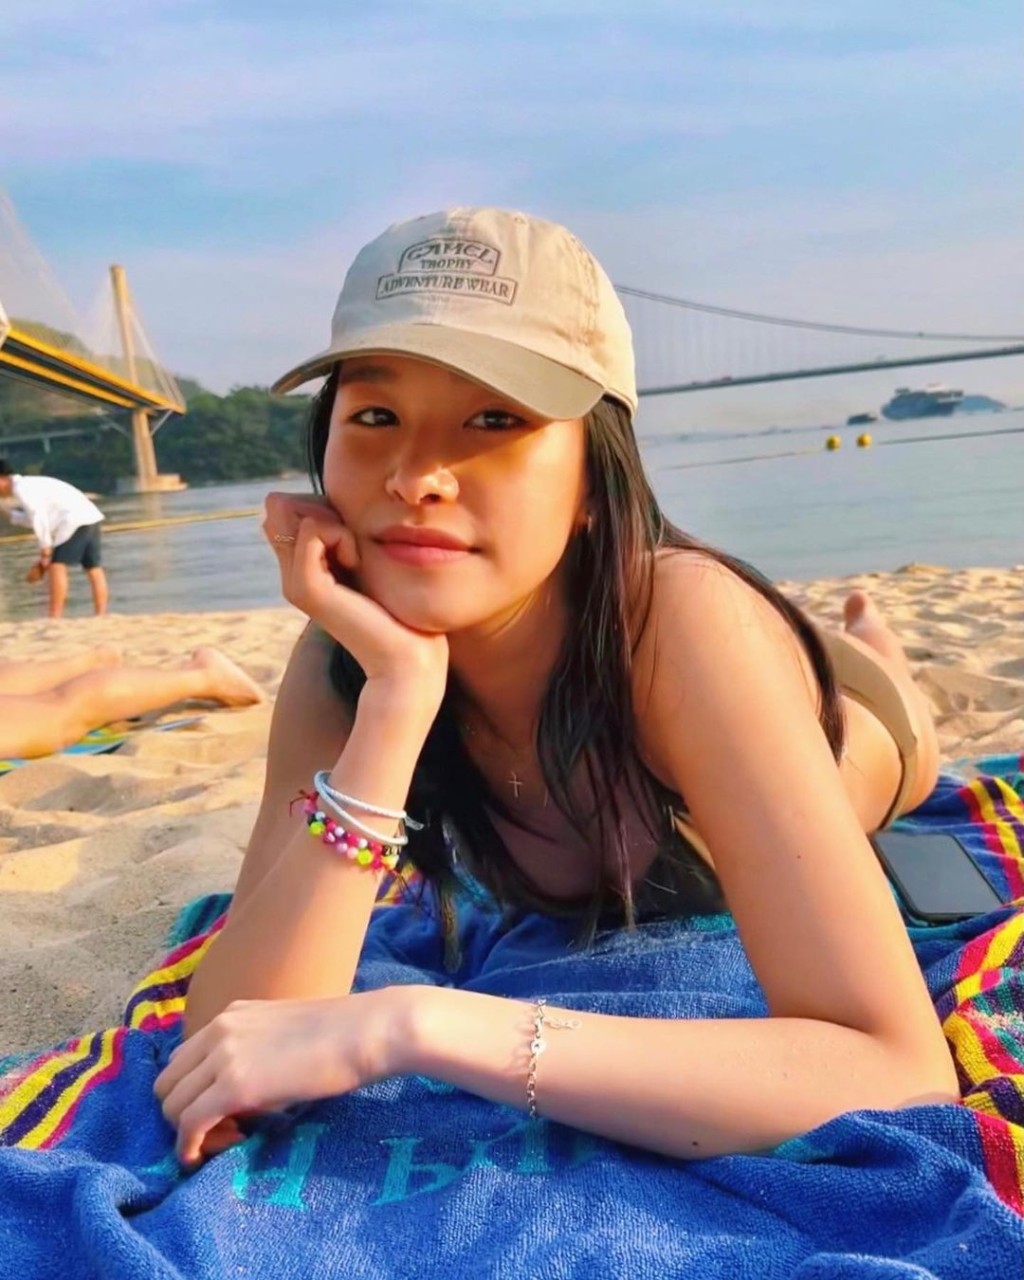 謝采芝是2019年落選香港小姐。